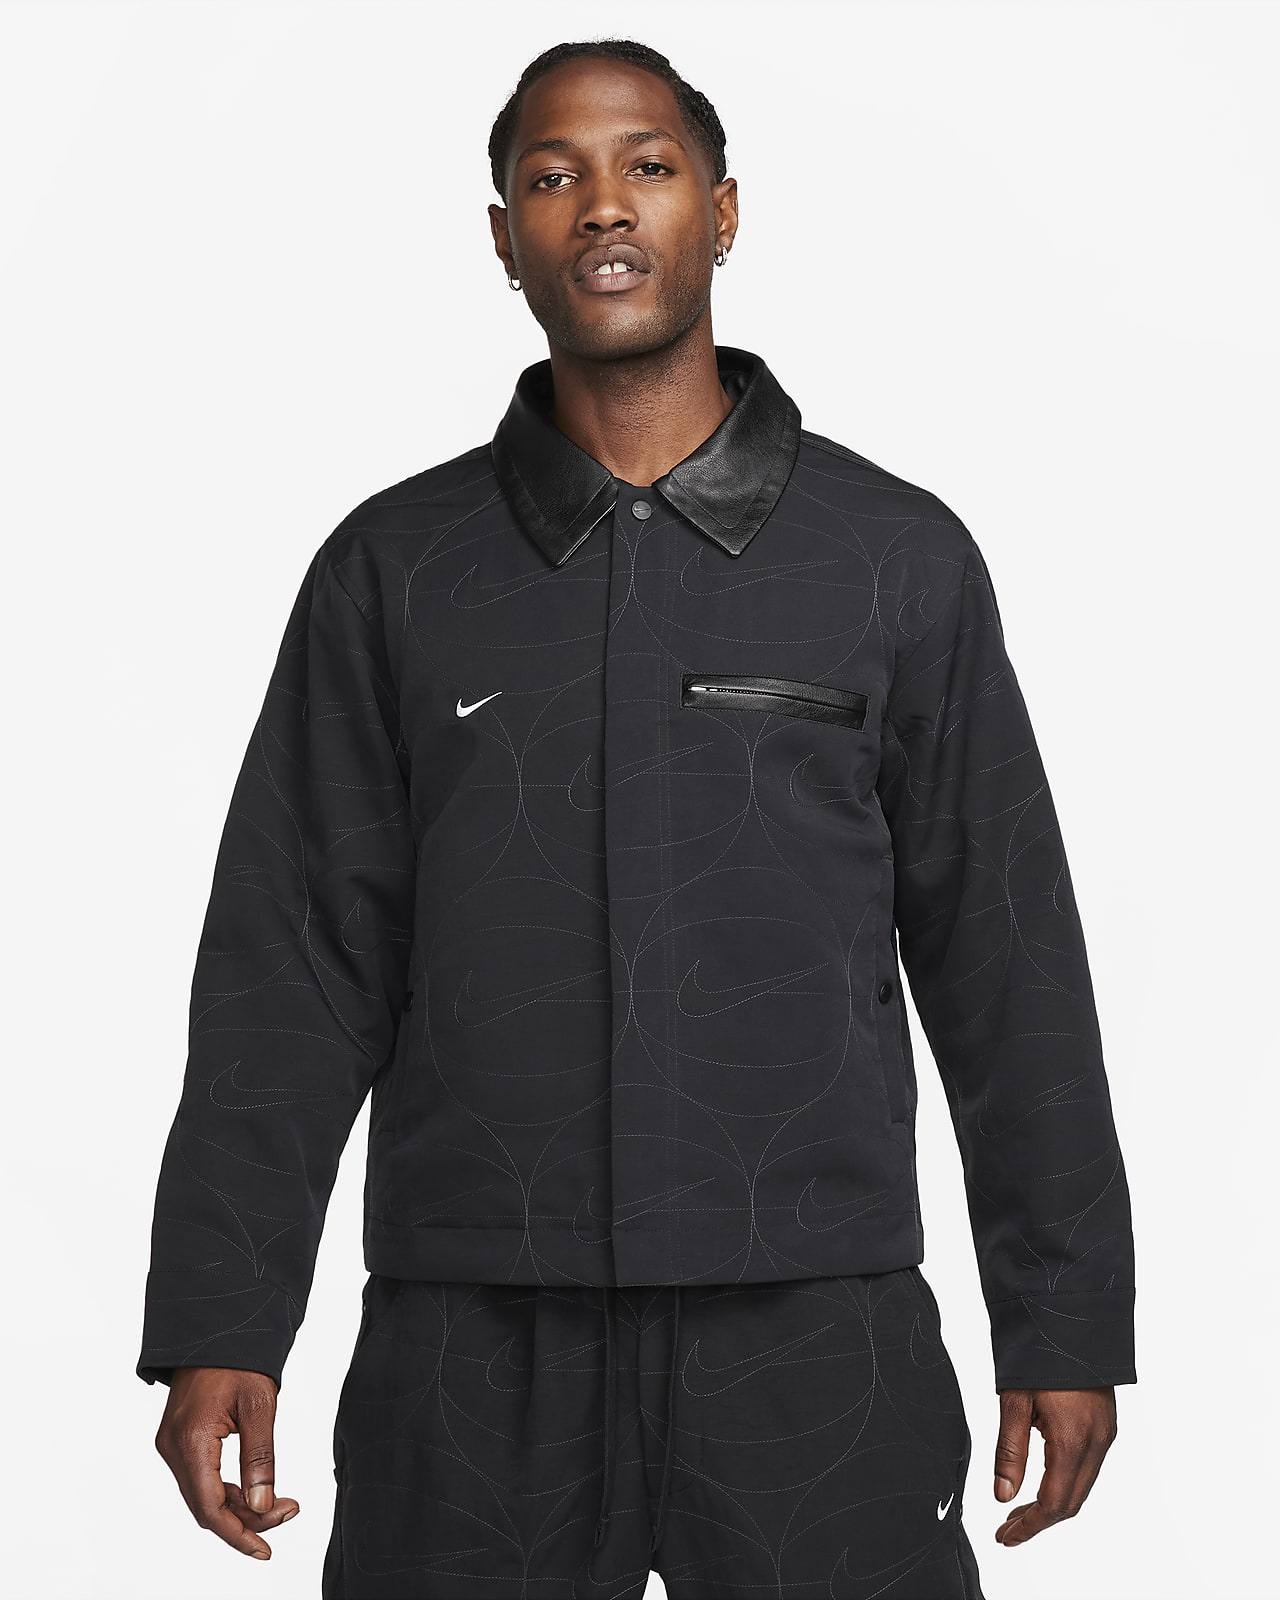 Men's Woven Basketball Jacket. Nike.com